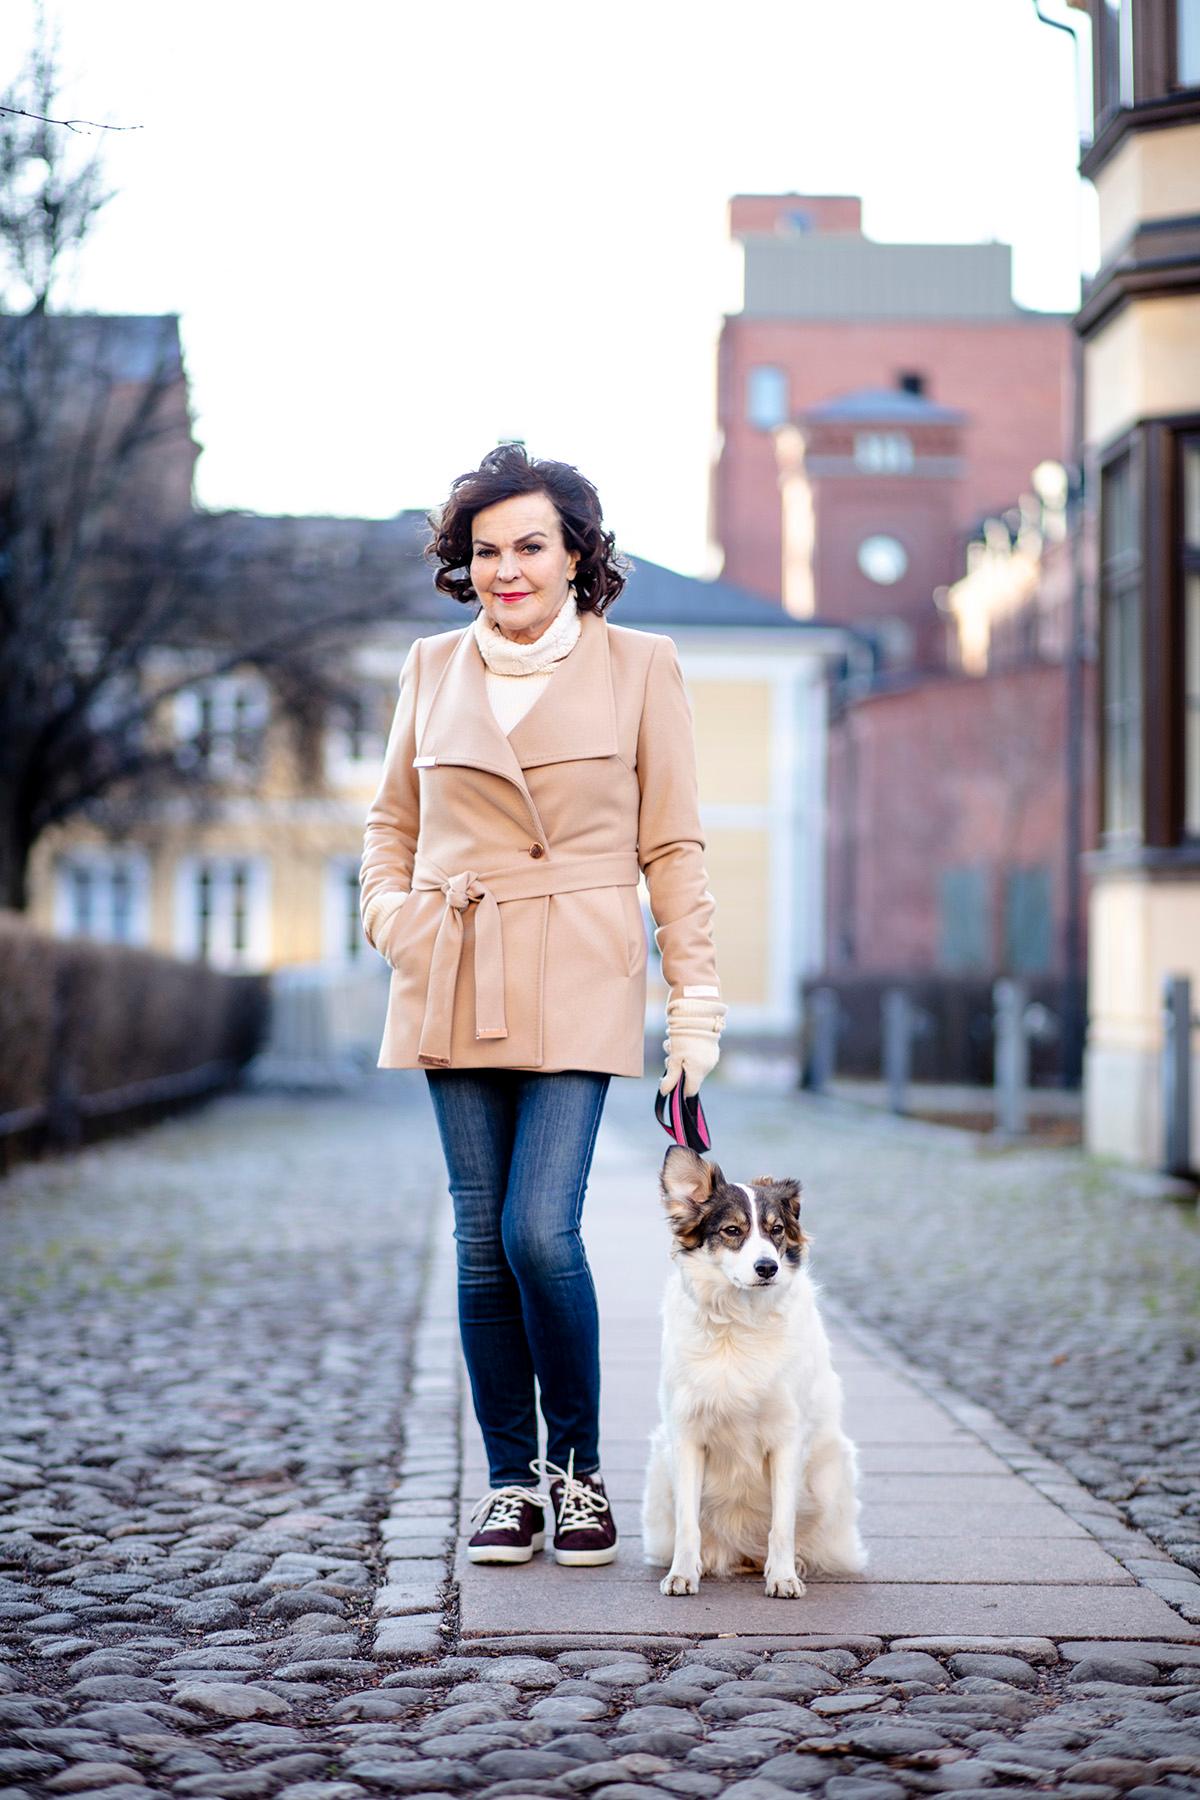 Paula Koivuniemi hoitaa kuntoaan lenkkeilemällä merenrannassa ja metsässä Siru-koiran kanssa.